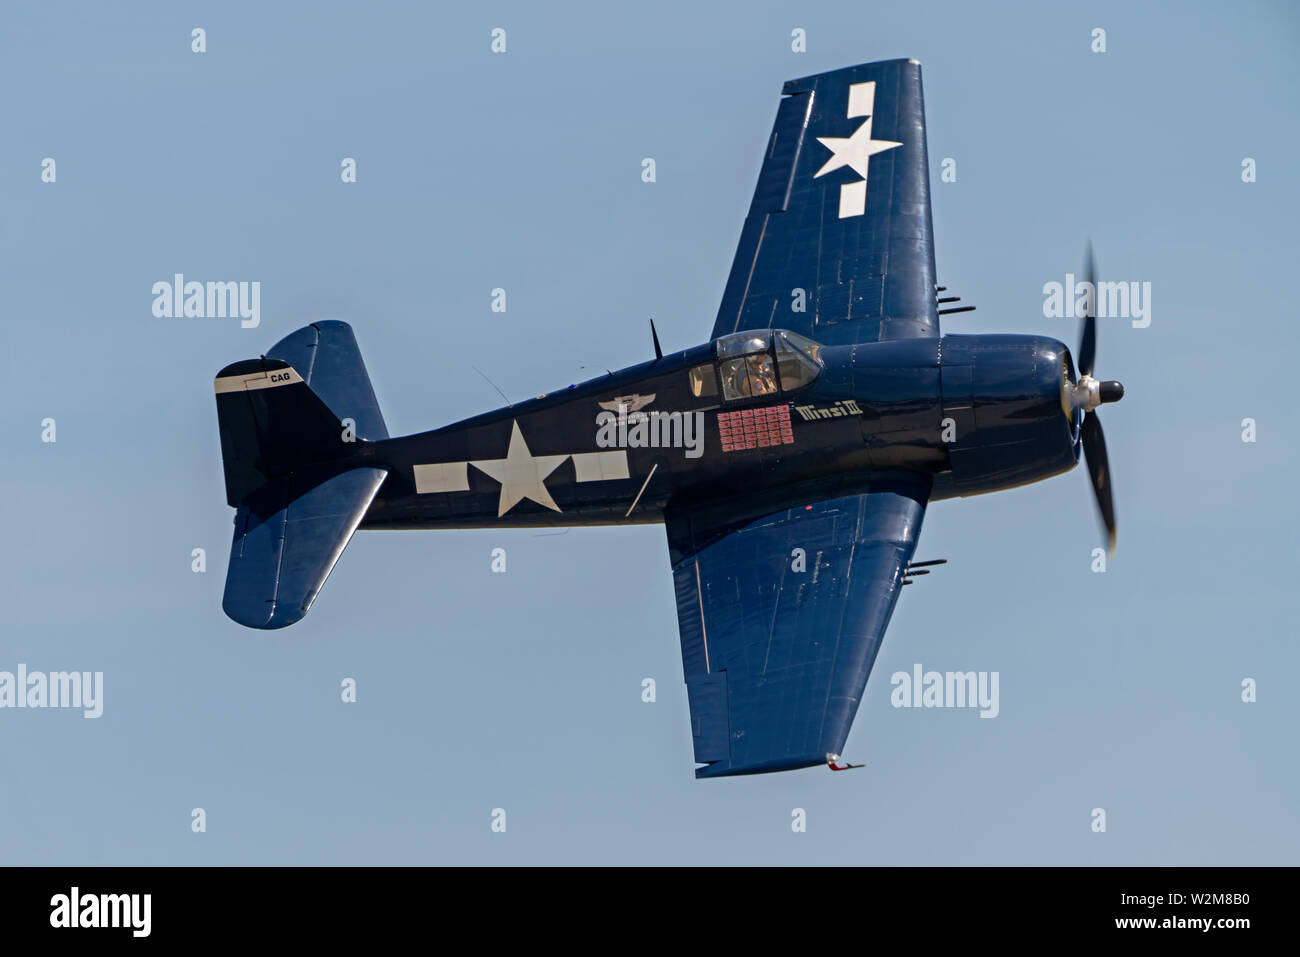 Airplane Grumman F6F Hellcat WWII fighter voler à un spectacle aérien de la Californie Banque D'Images